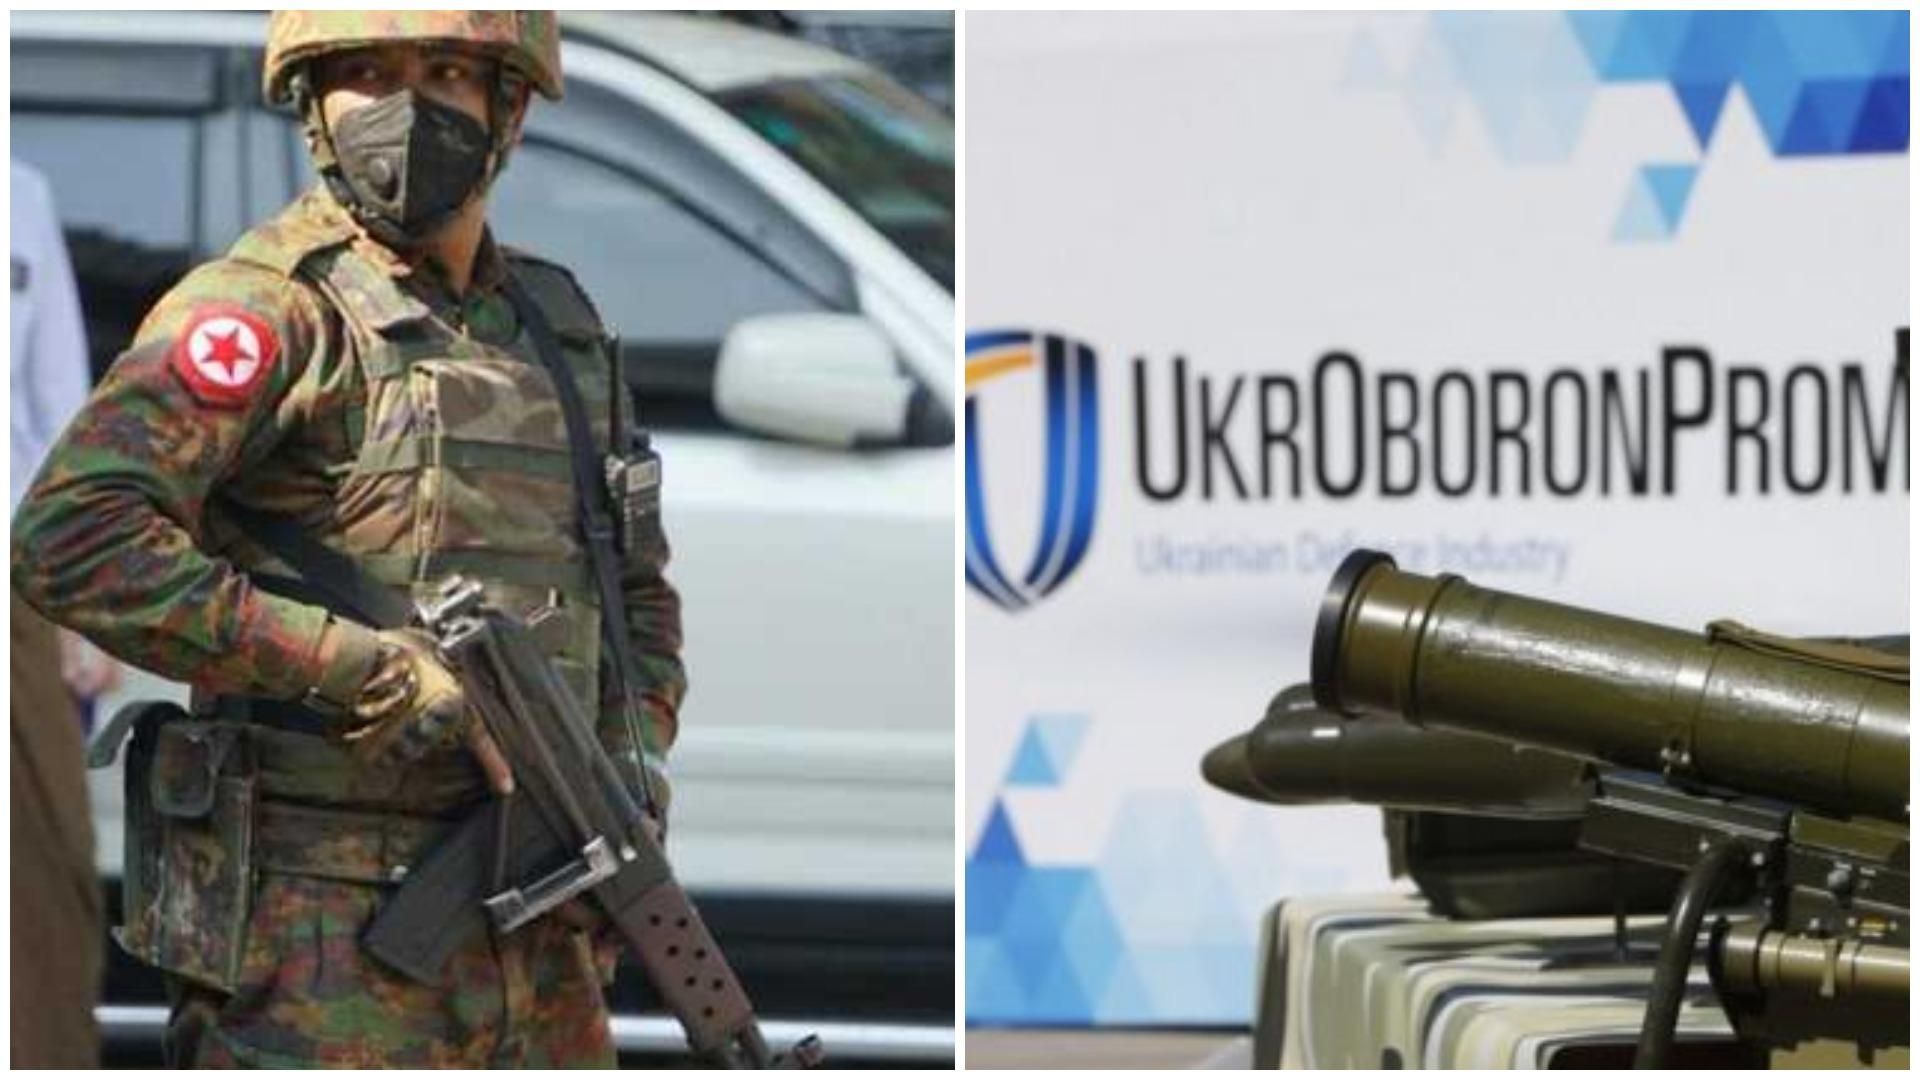 Усе згідно з законом, – Укроборонпром відмахнувся від звинувачення у торгівлі зброєю з М'янмою - Україна новини - 24 Канал